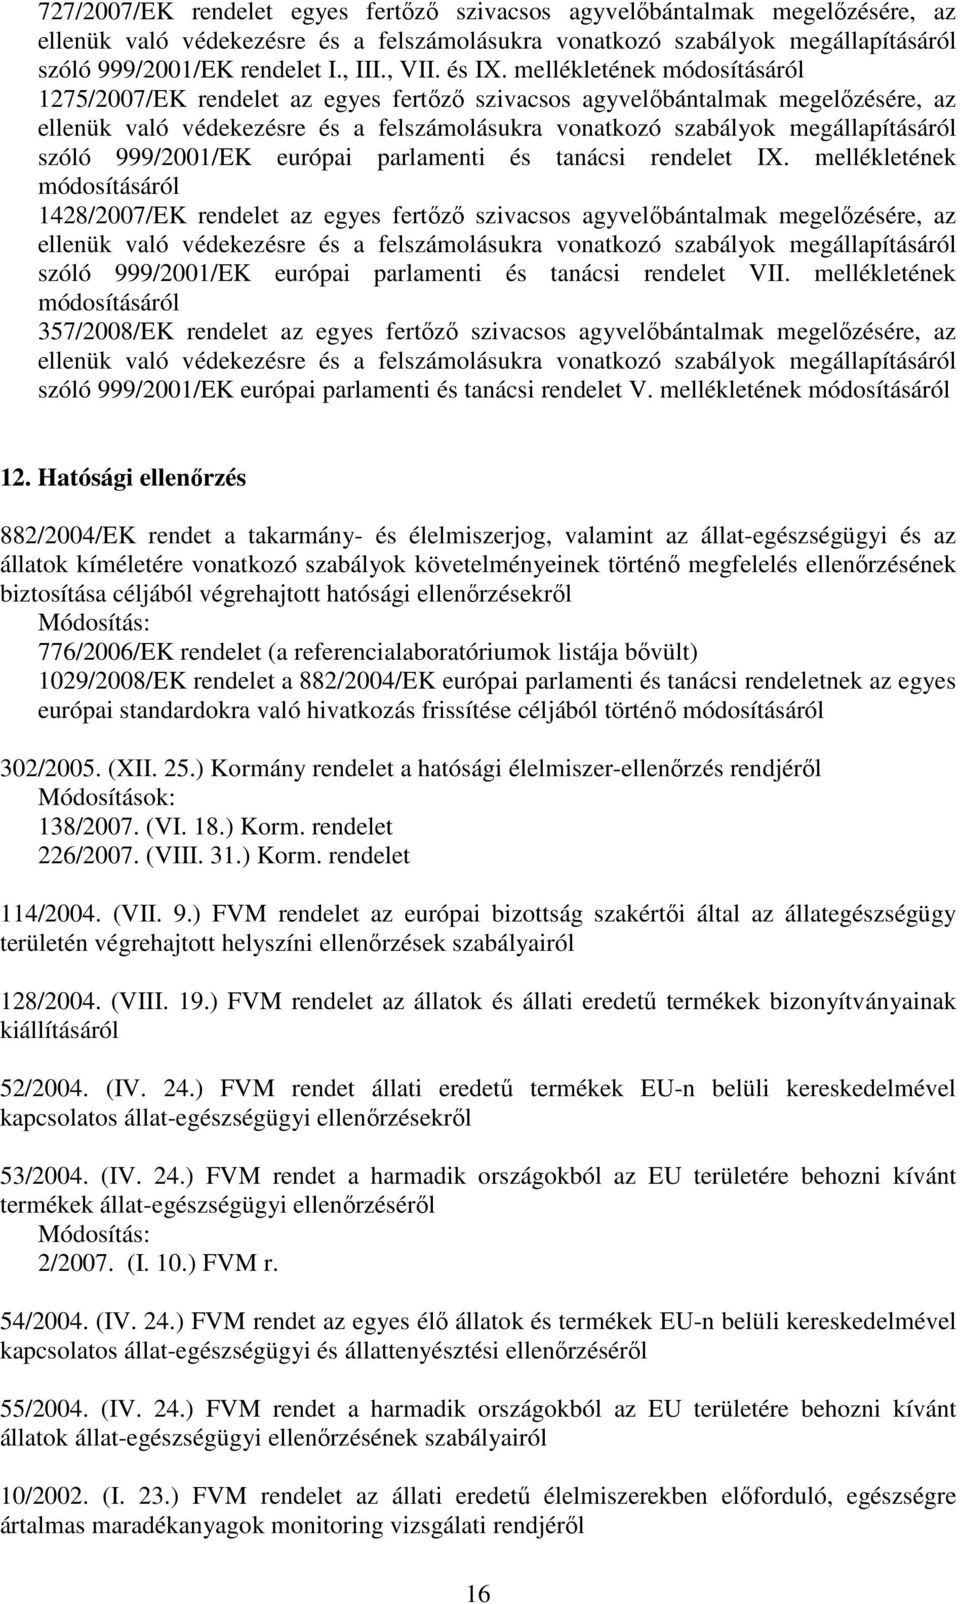 mellékletének módosításáról 1275/2007/EK rendelet az egyes fertızı szivacsos agyvelıbántalmak megelızésére, az ellenük való védekezésre és a felszámolásukra vonatkozó szabályok megállapításáról szóló